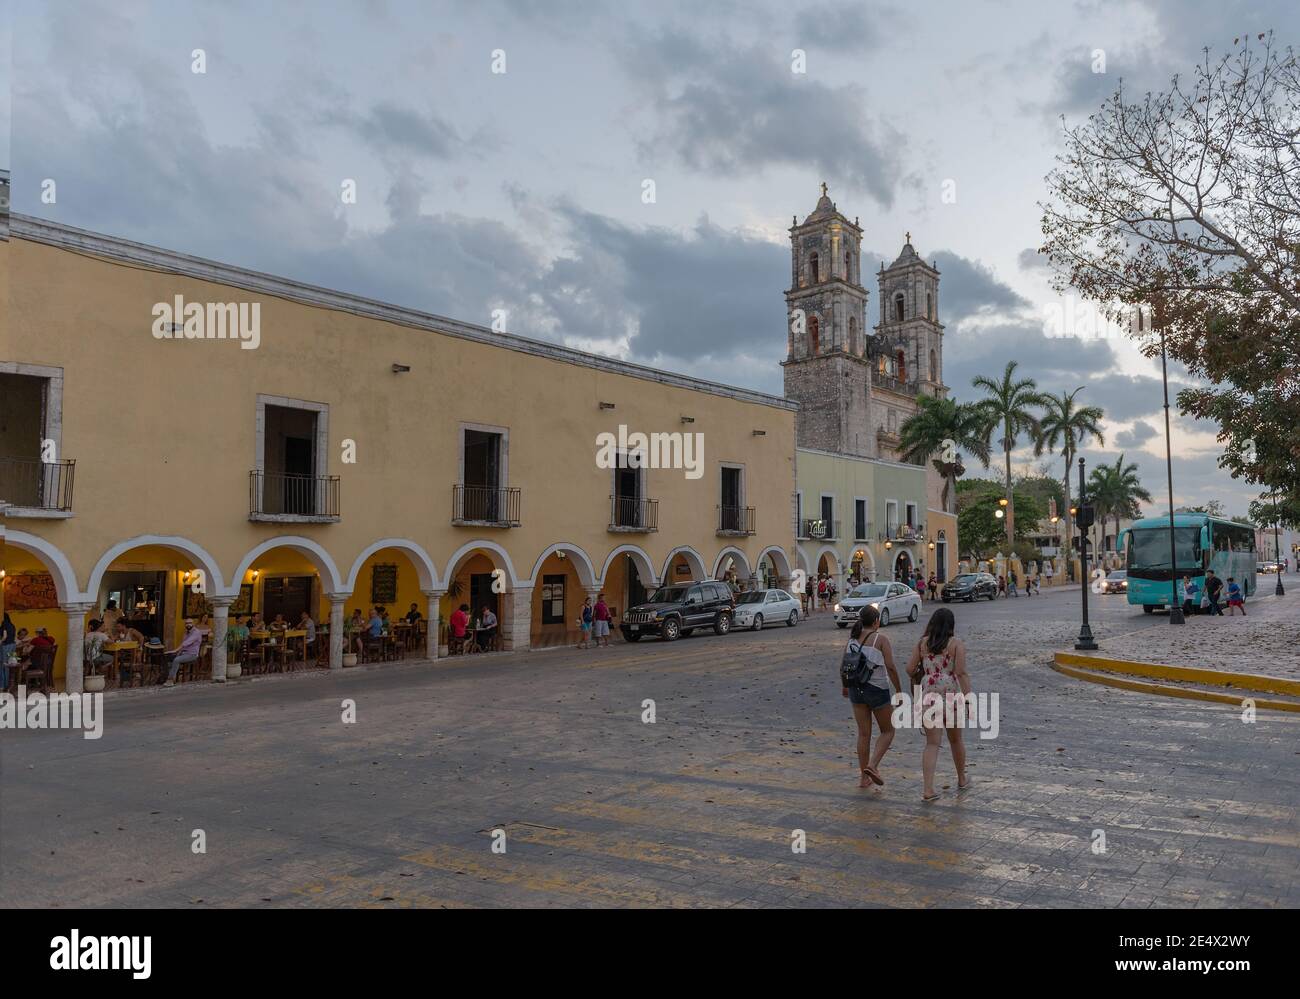 Personnes non identifiées devant l'église de San Servacio Saint Servatius à Valladolid, Yucatan, Mexique Banque D'Images